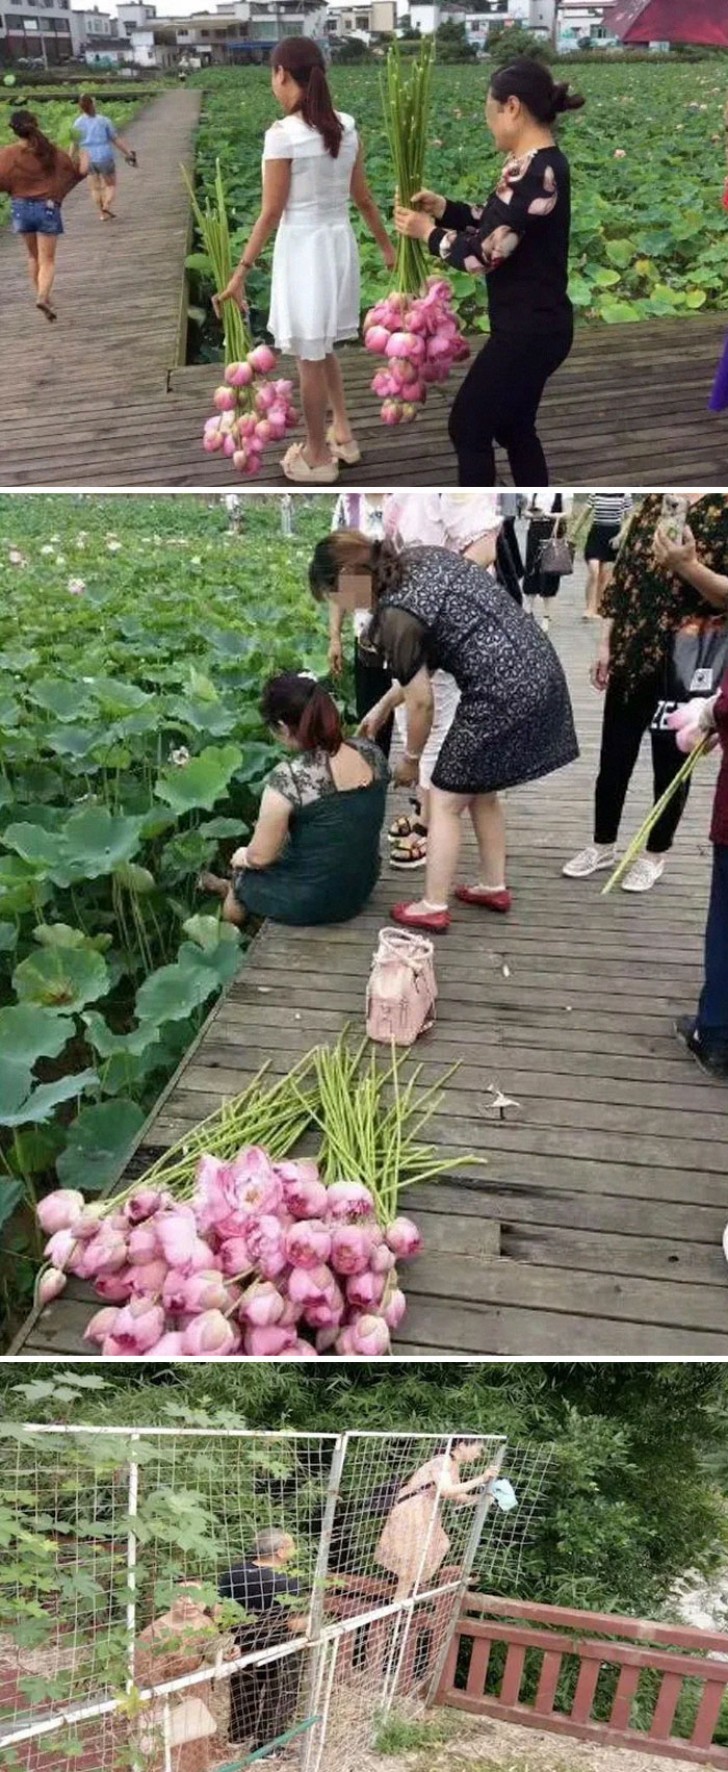 All'Eco Park di Sichuan in Cina i turisti spogliano tutti i fiori di loto dei loro petali...